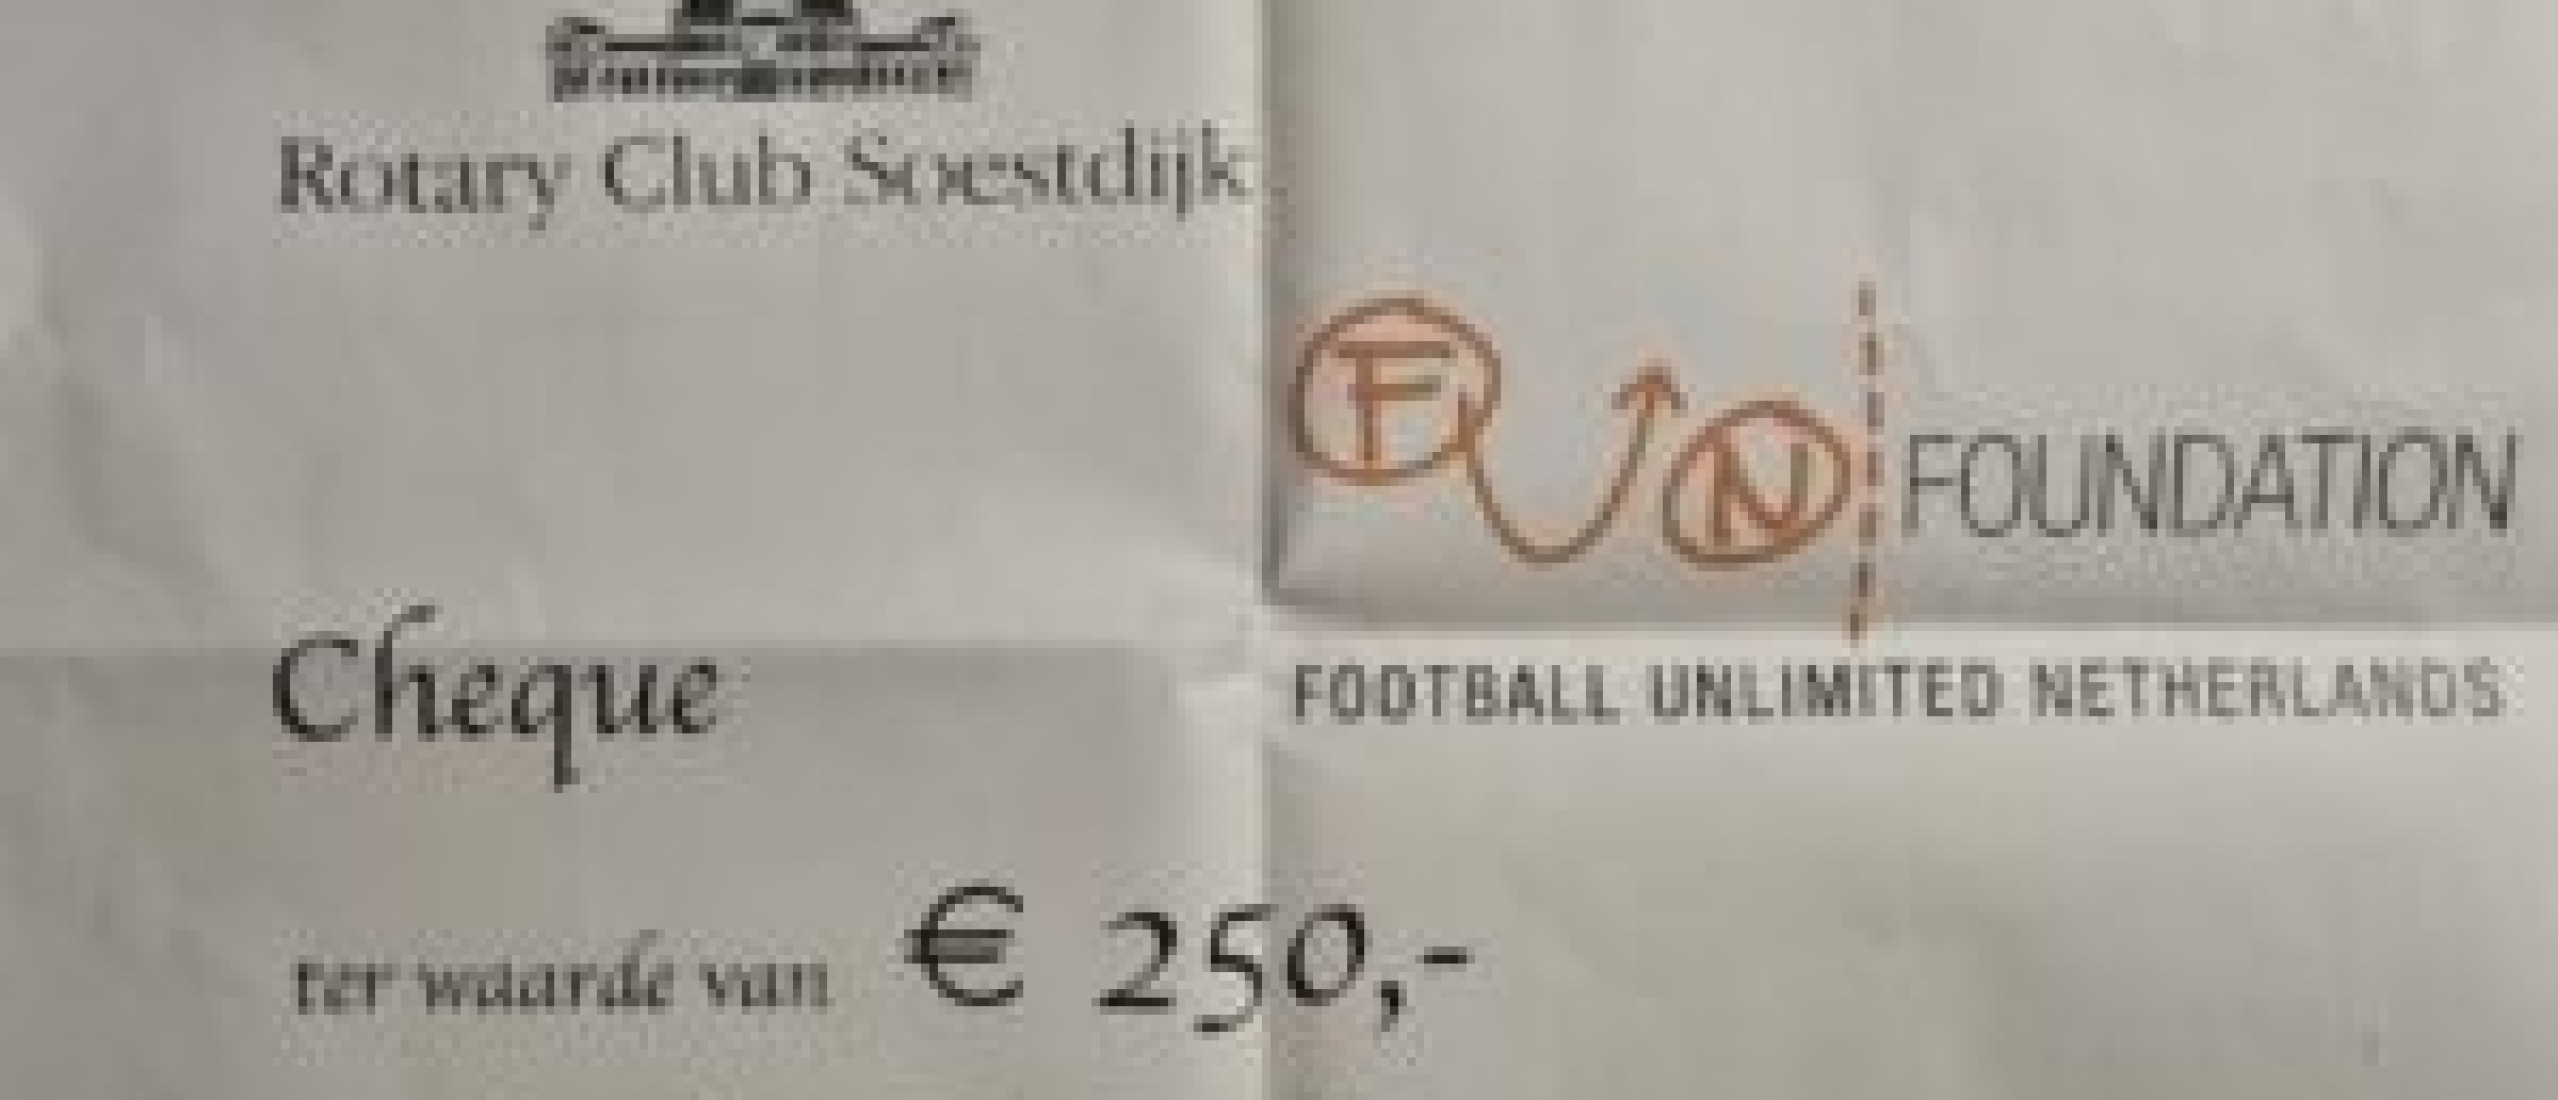 Rotary Club Soestdijk schenkt € 250,-